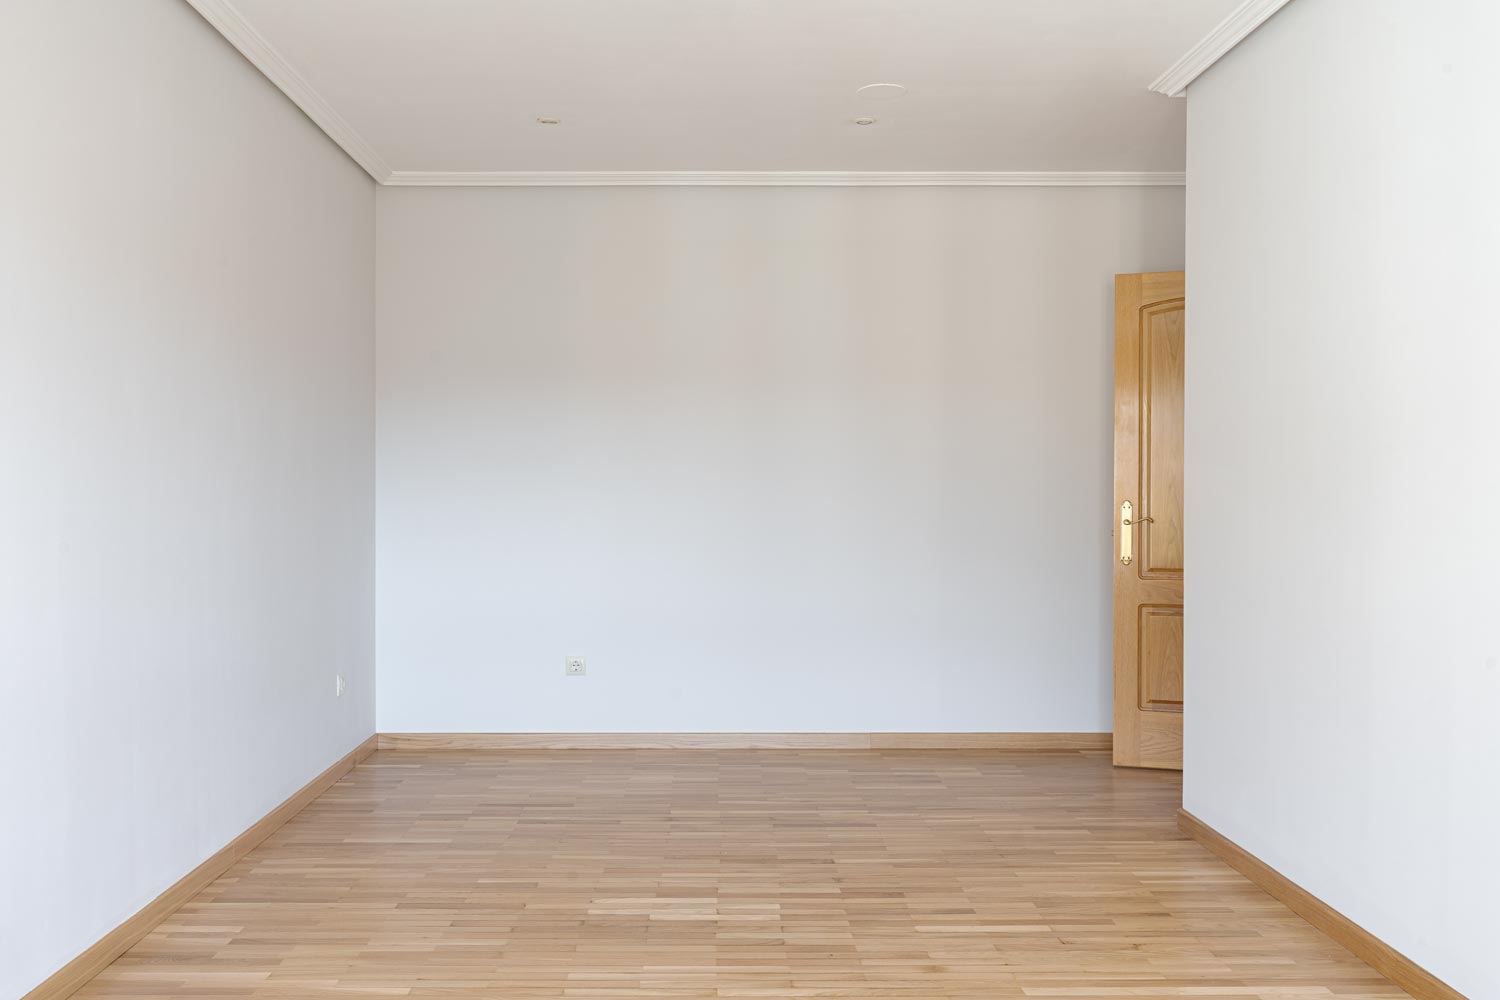 Habitación amplia y luminosa con suelo de parquet, lista para personalizar en piso en Sada, ideal para crear un hogar a medida